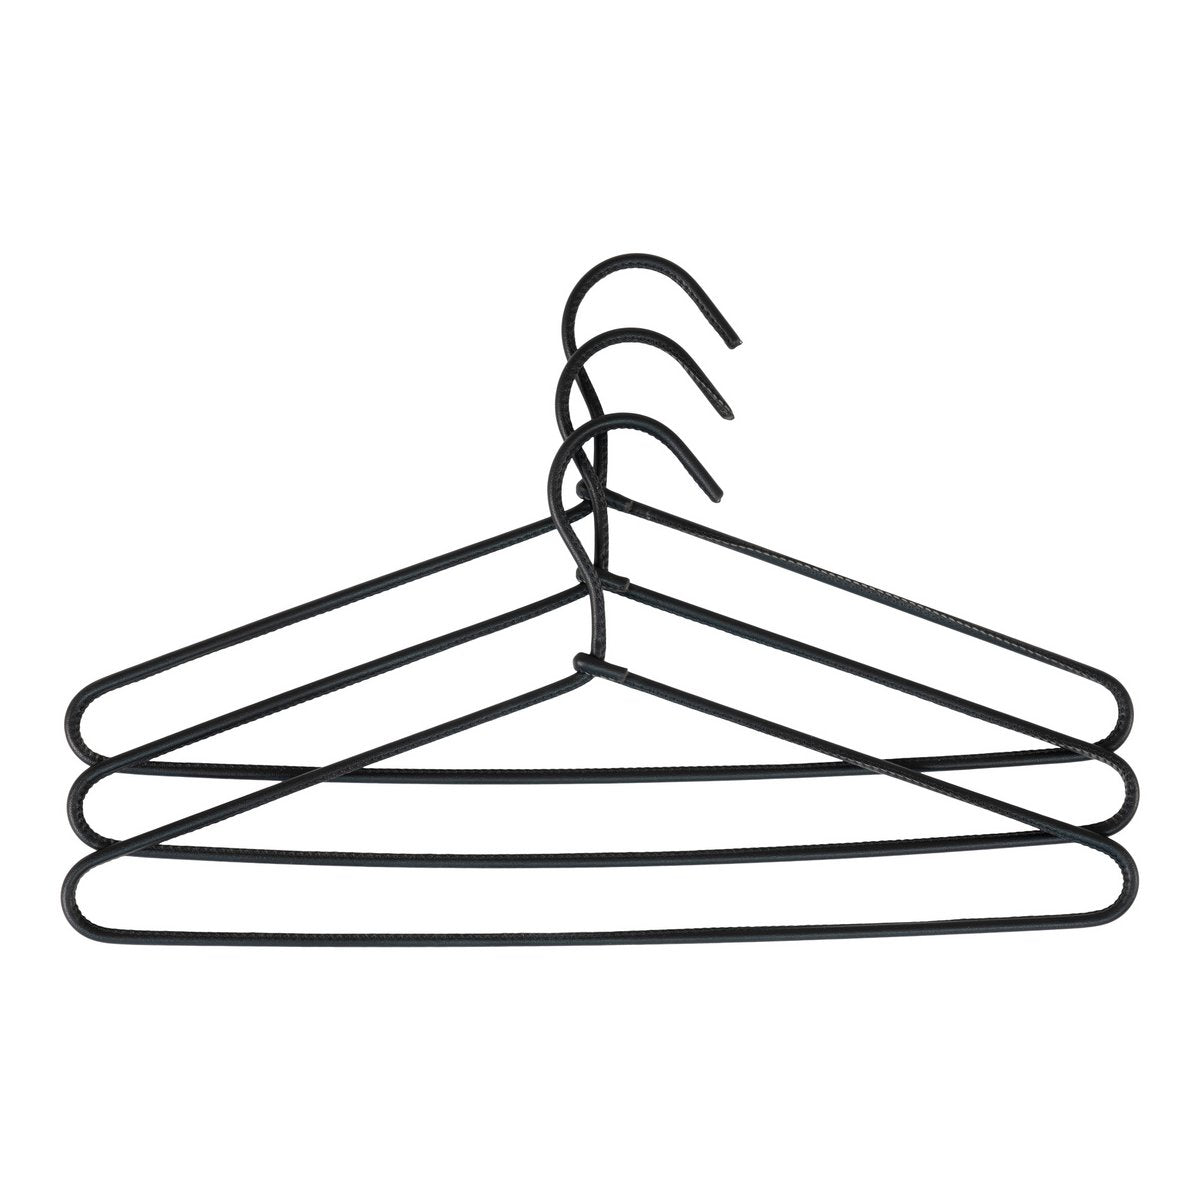 Bardi-hangers